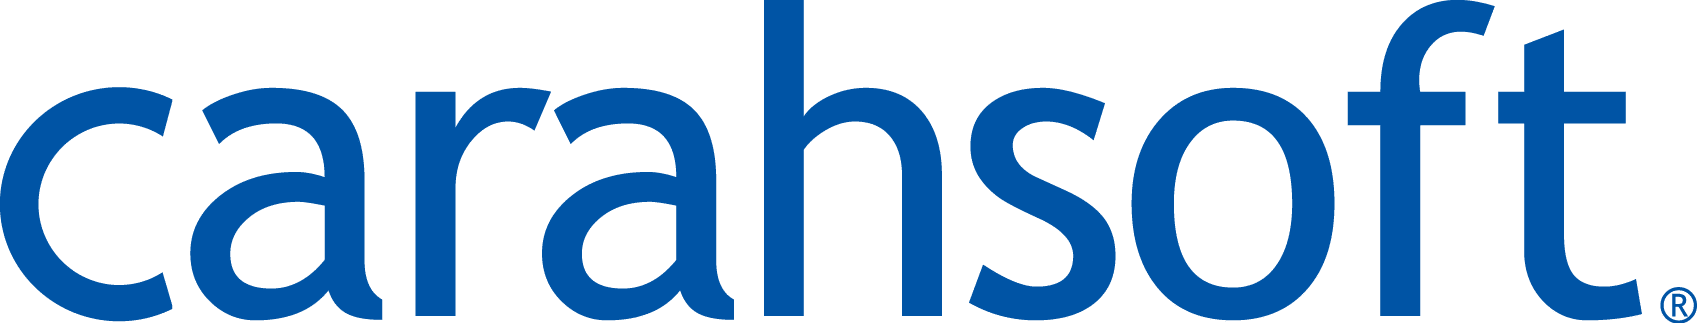 Carahsoft-logo